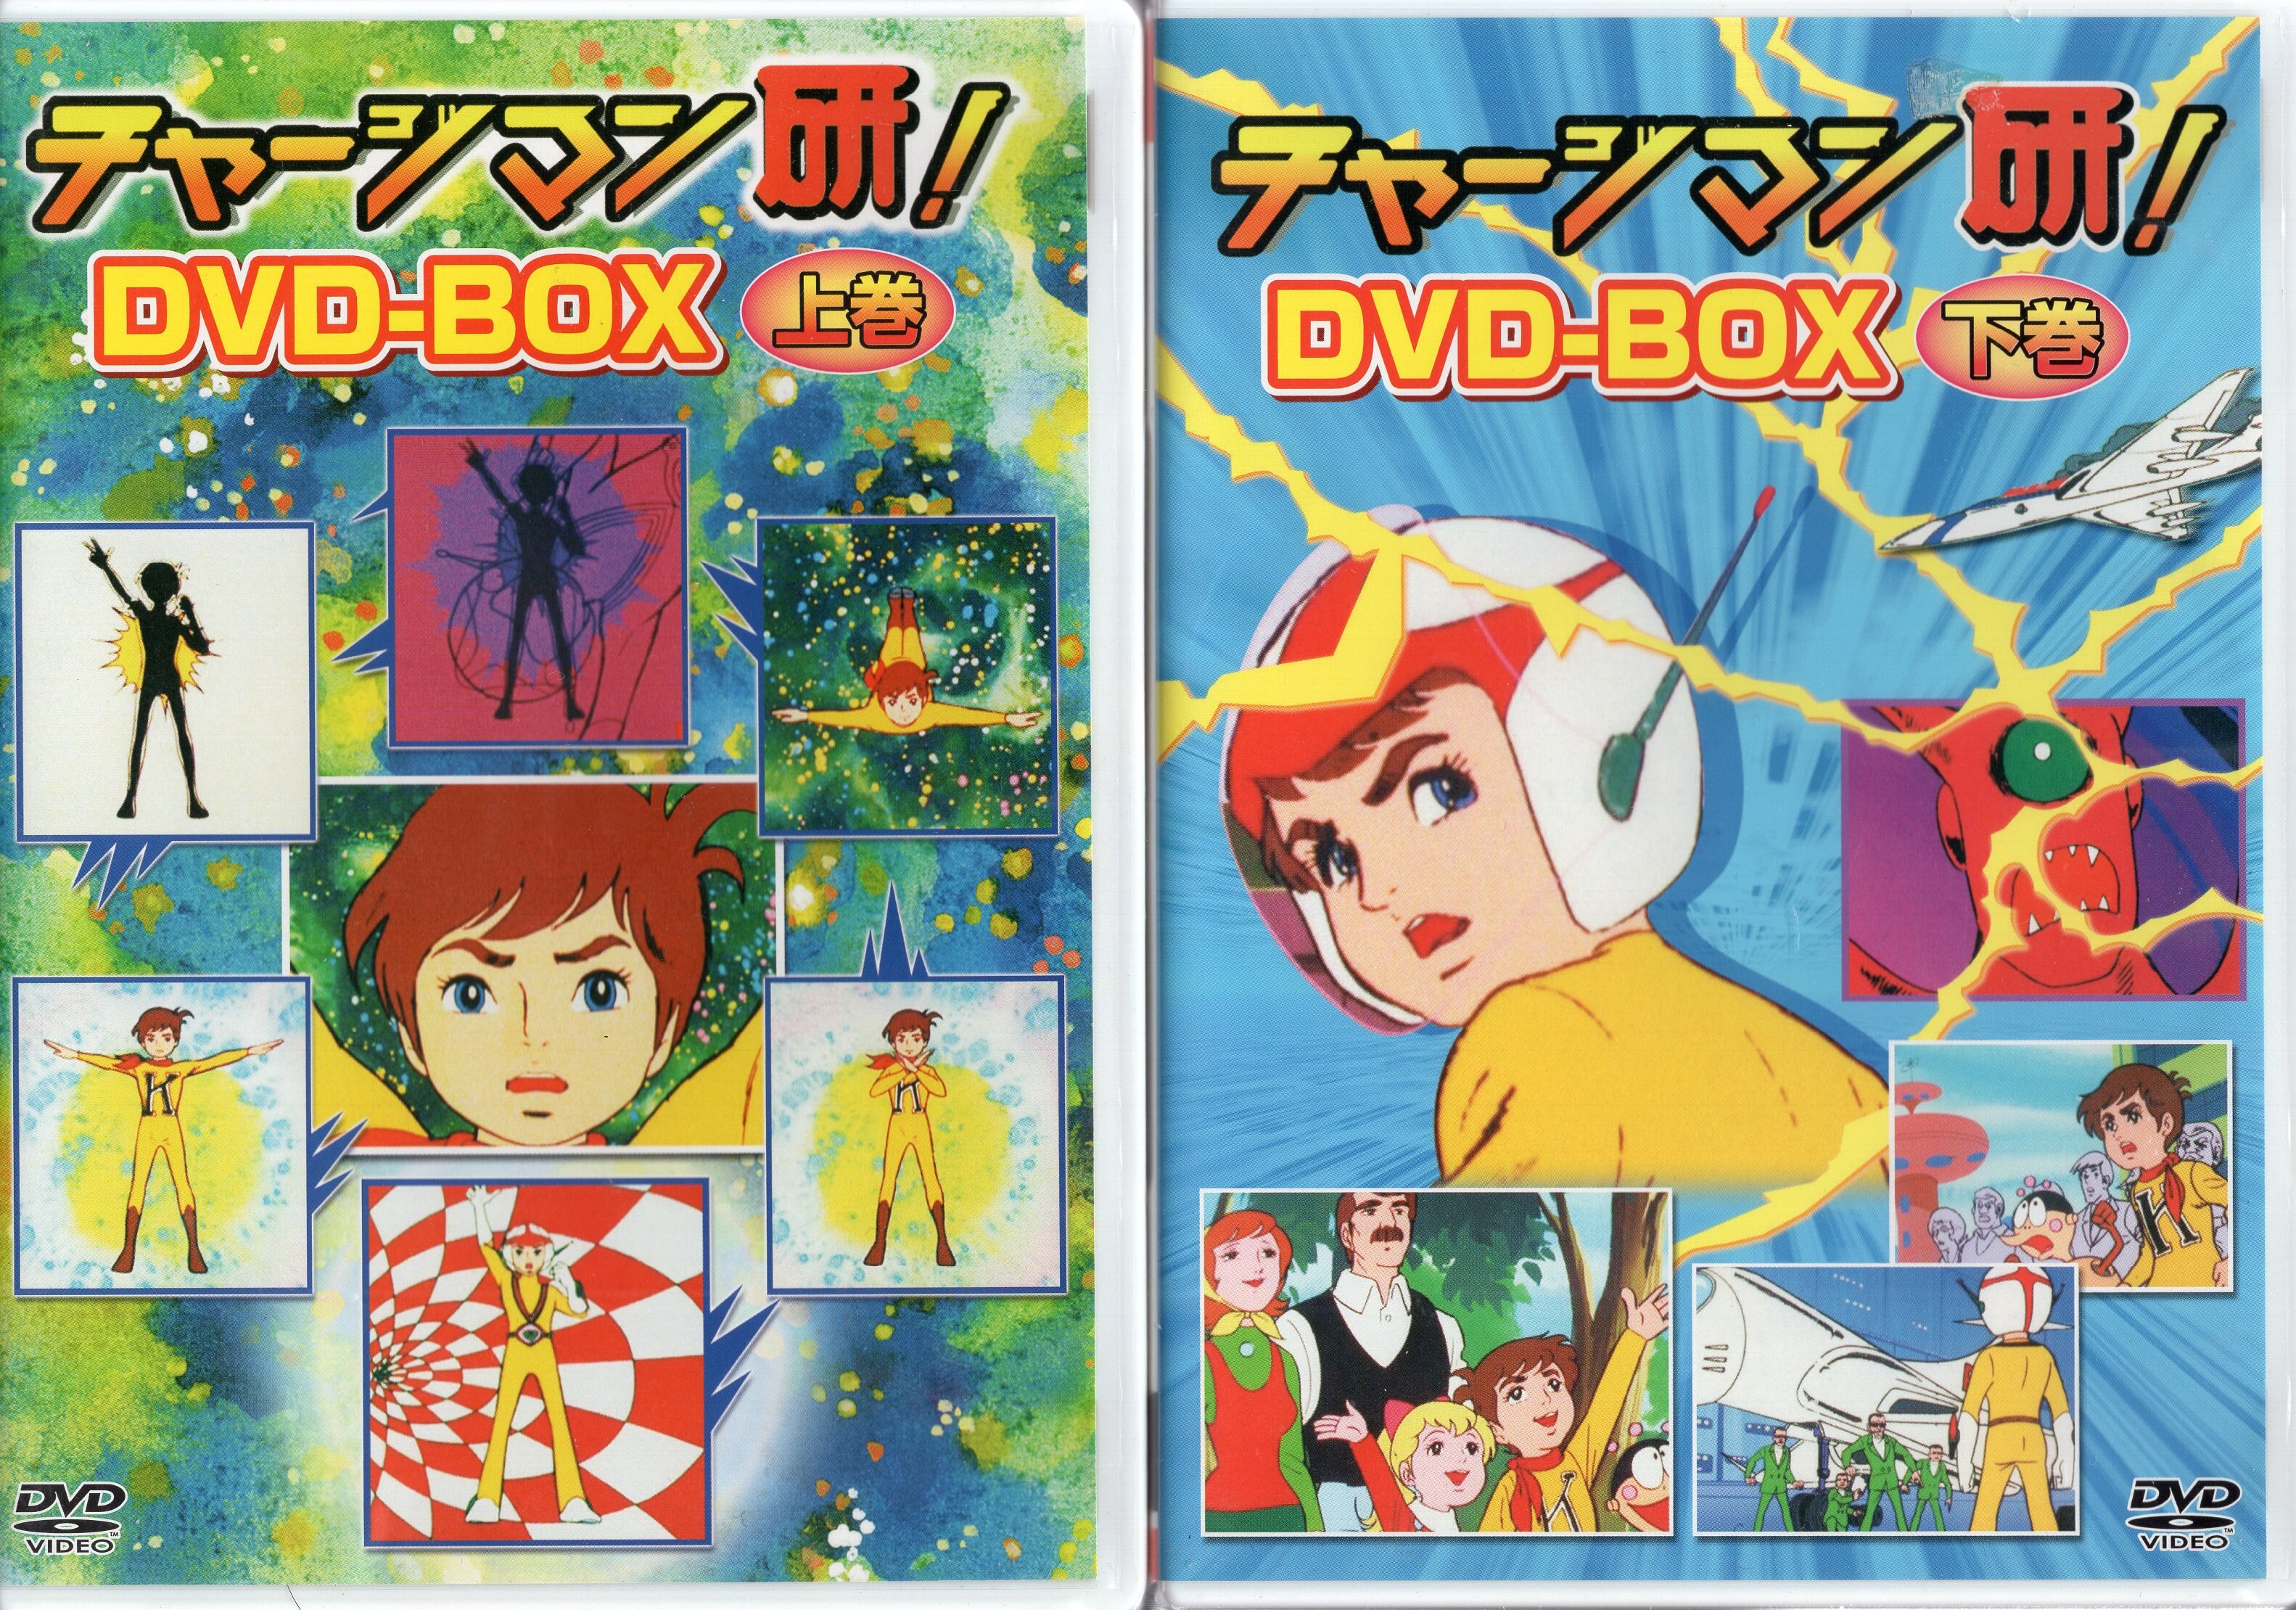 チャージマン研! DVD-BOX 下巻 www.iqueideas.in